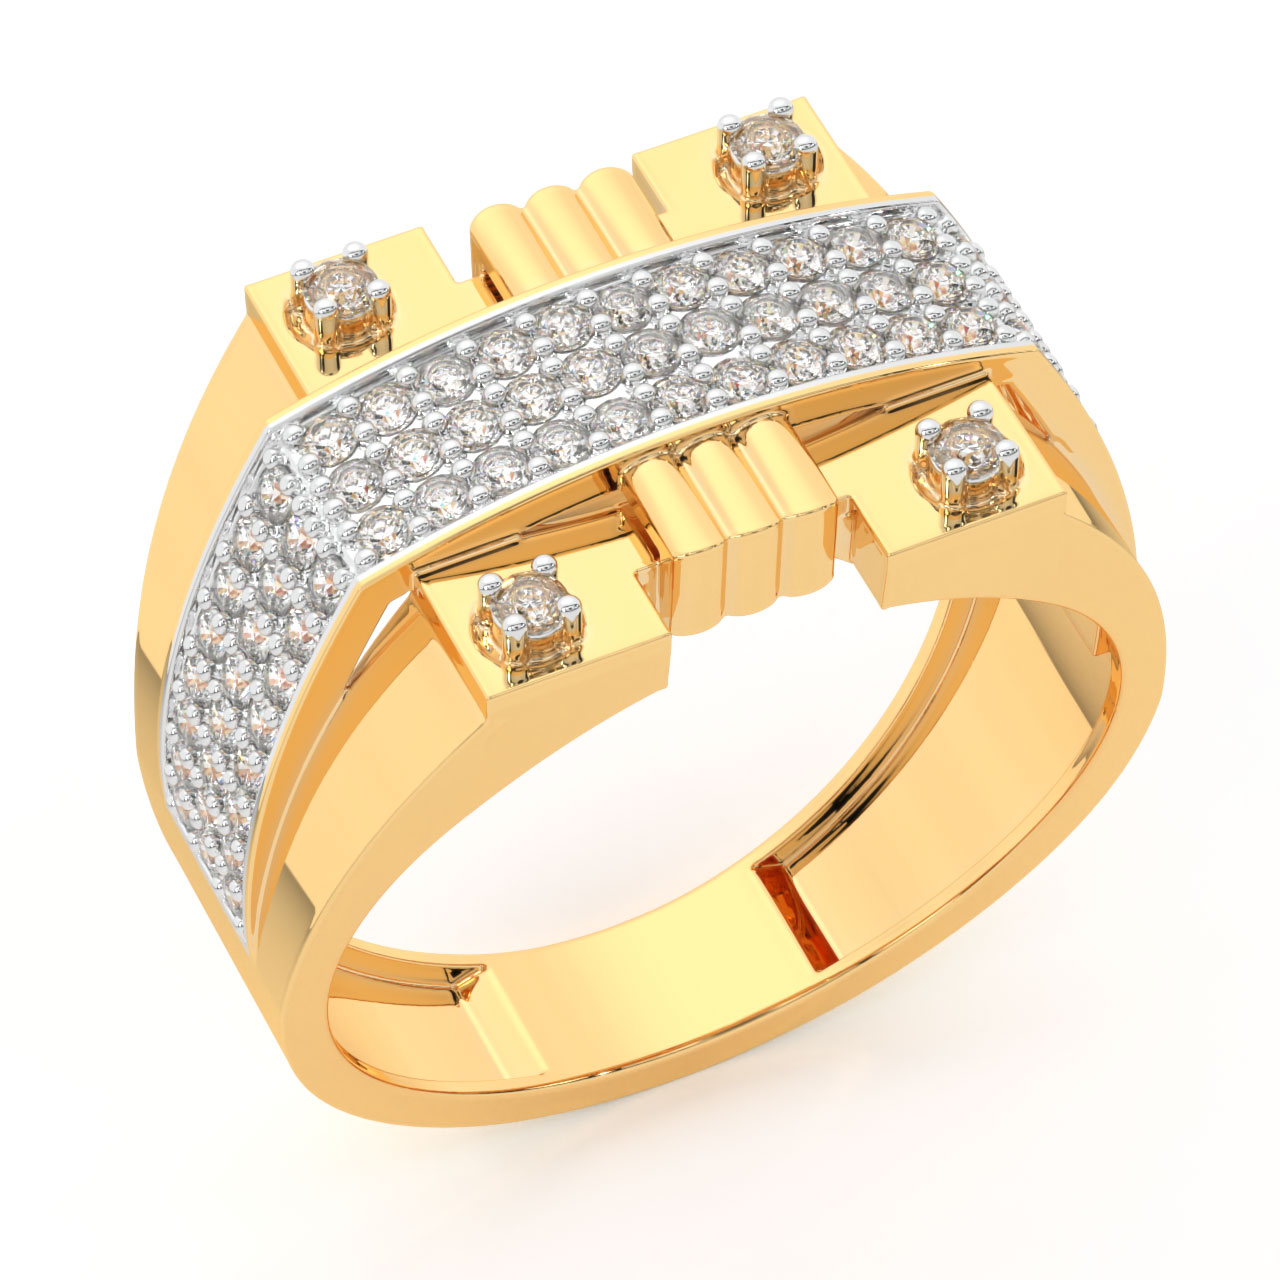 Jasper Round Diamond Ring For Men